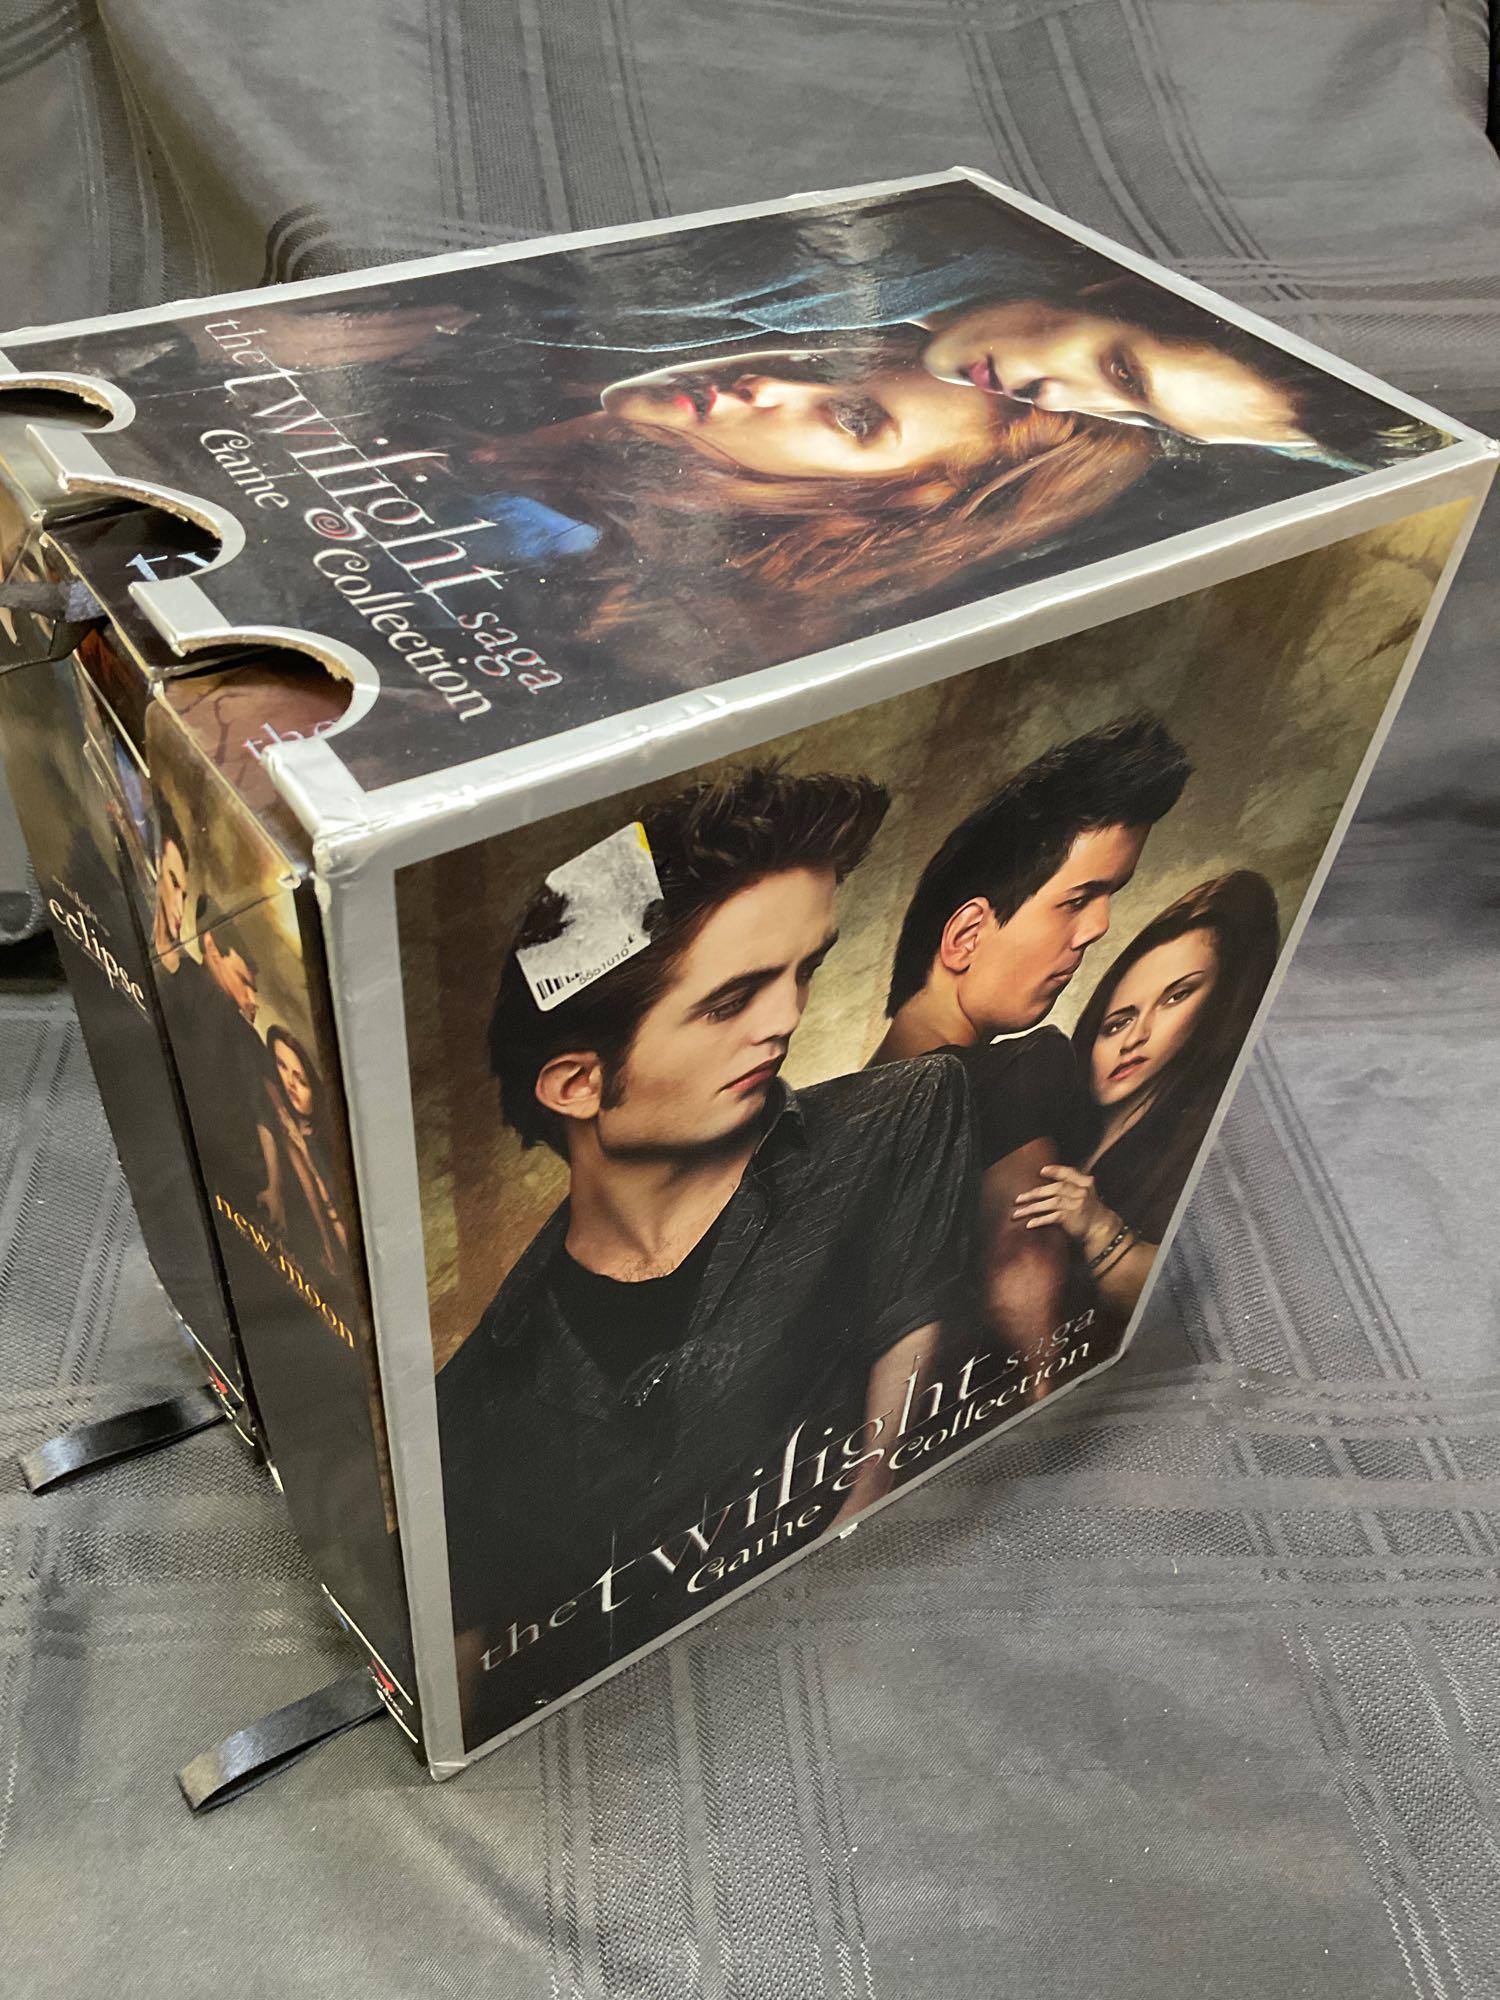 The Twilight Saga game Collection